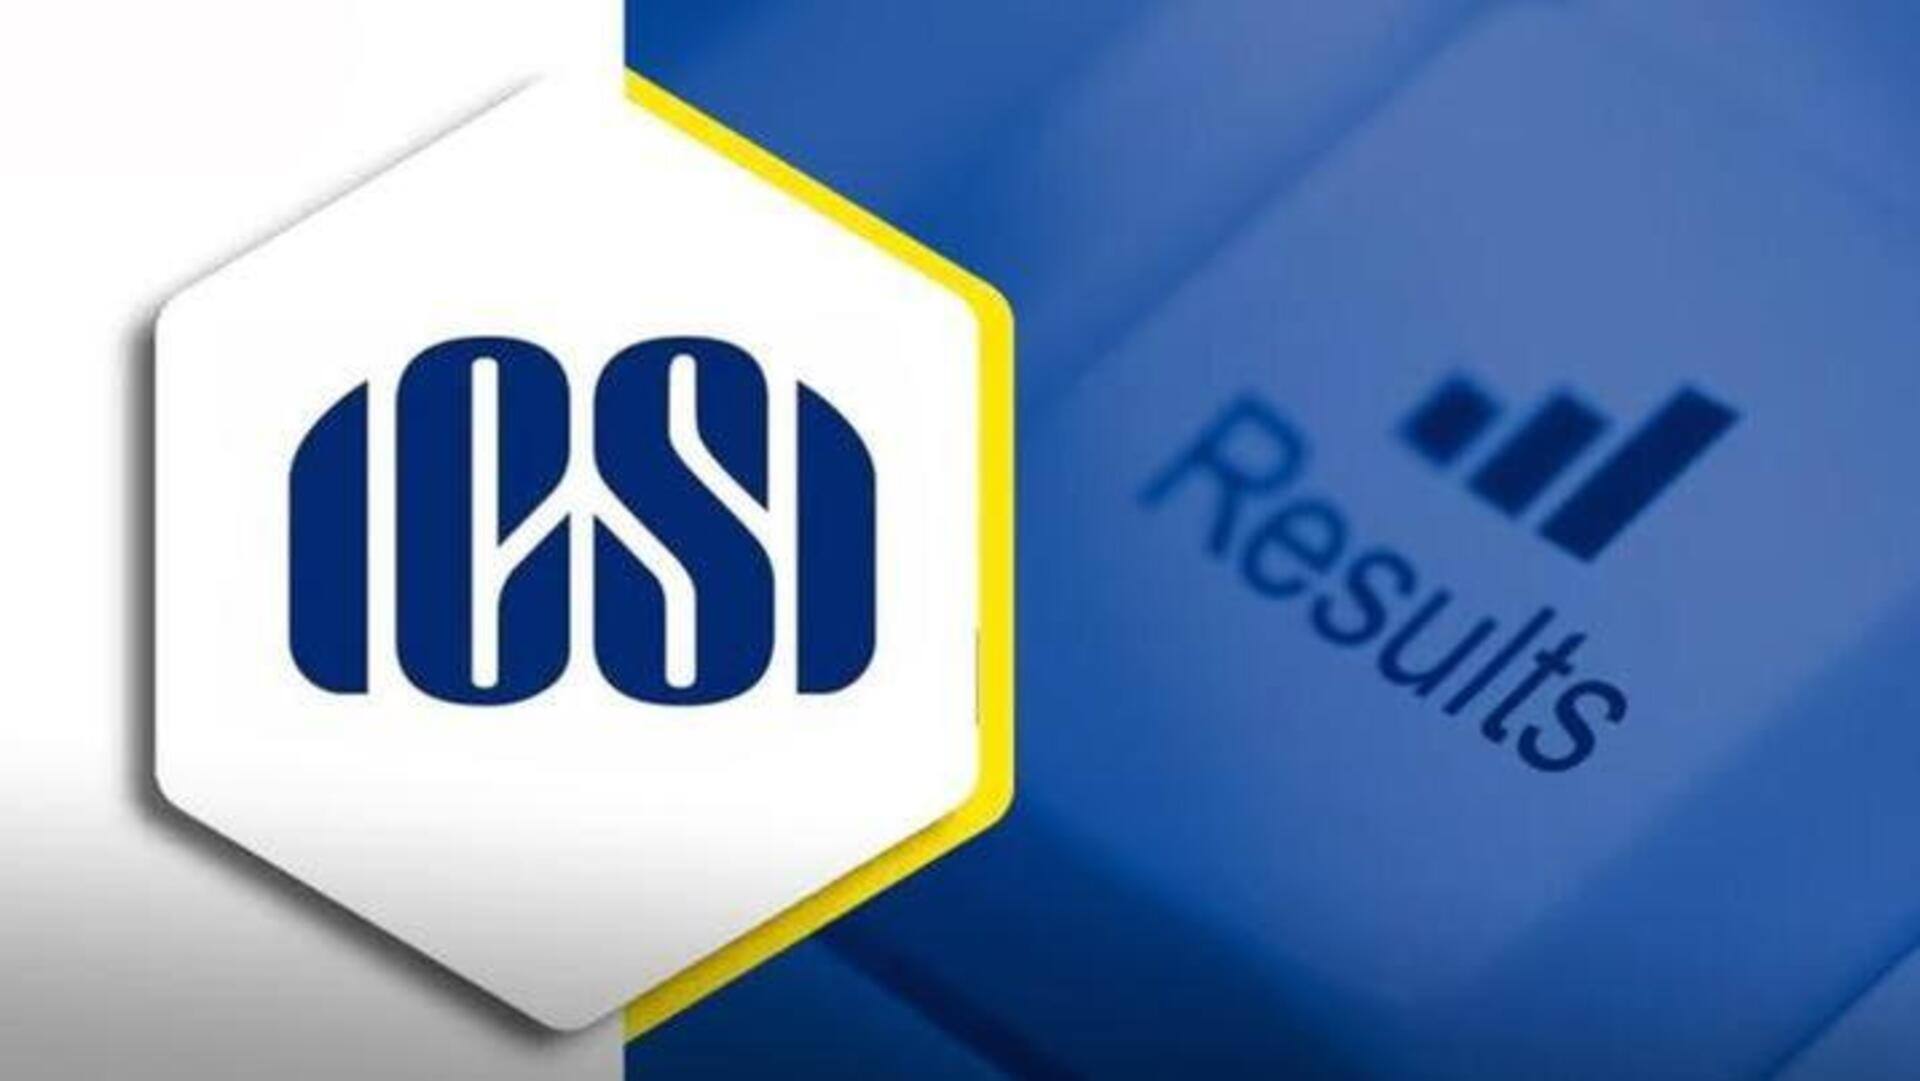 ICSI ने जारी किया CS प्रोफेशनल दिसंबर सत्र का परिणाम, ऐसे देखें नतीजे